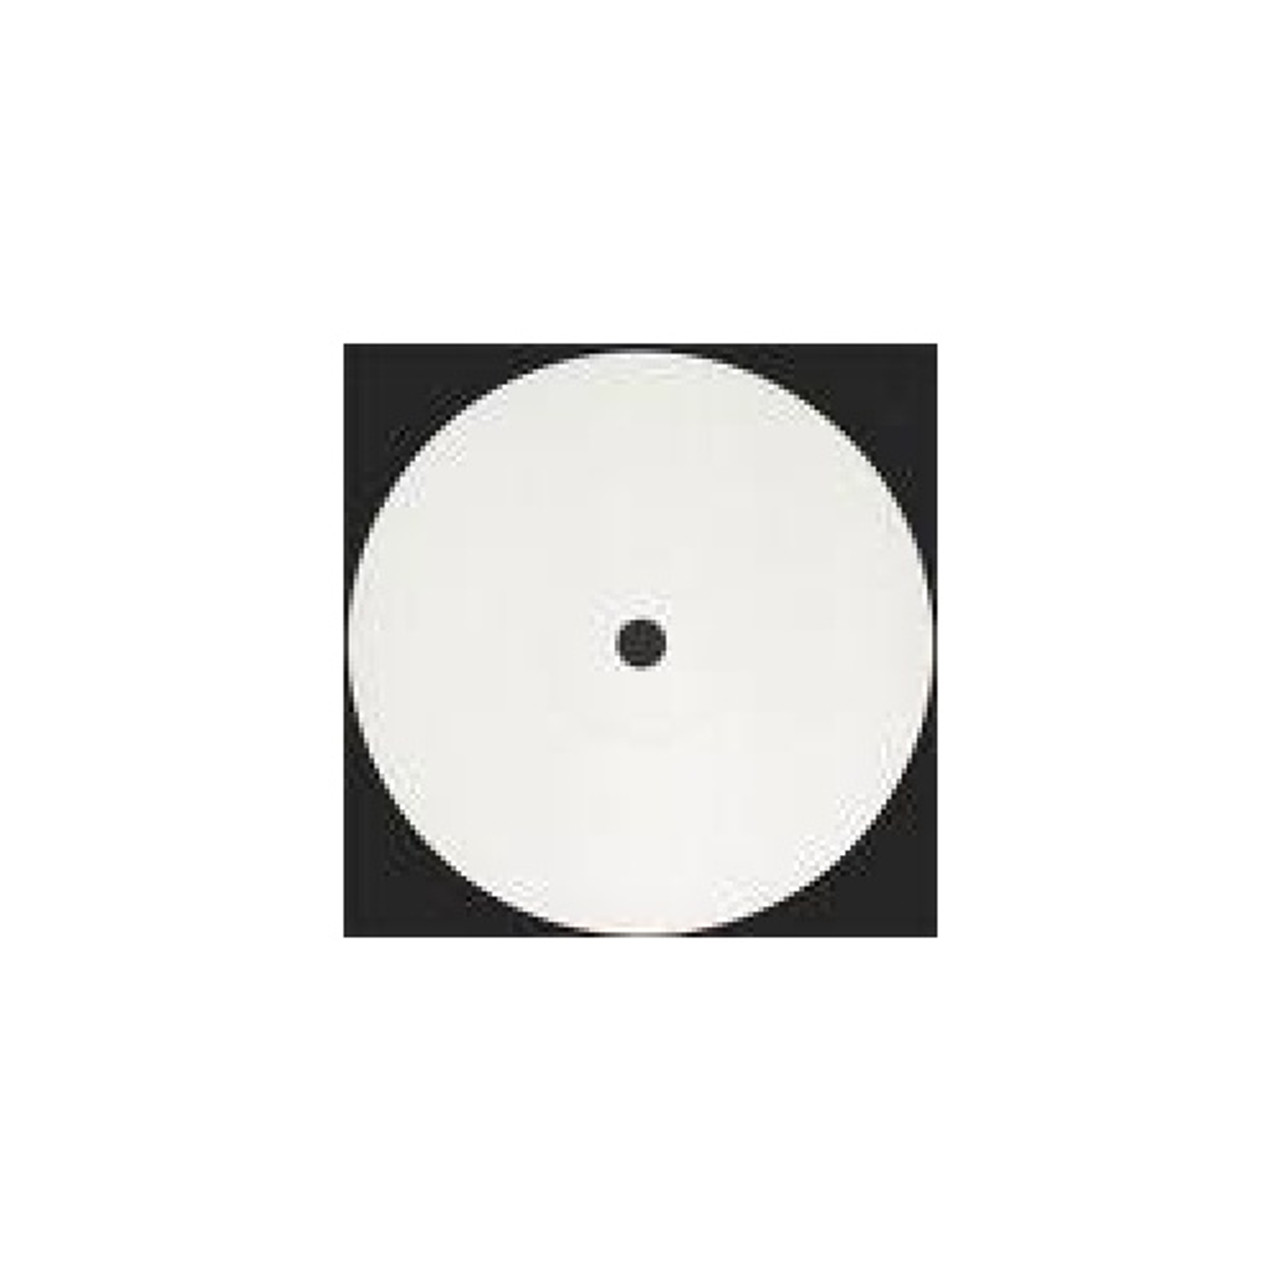 Turboweekend/Jsl Something - 12" Vinyl - Ear Music